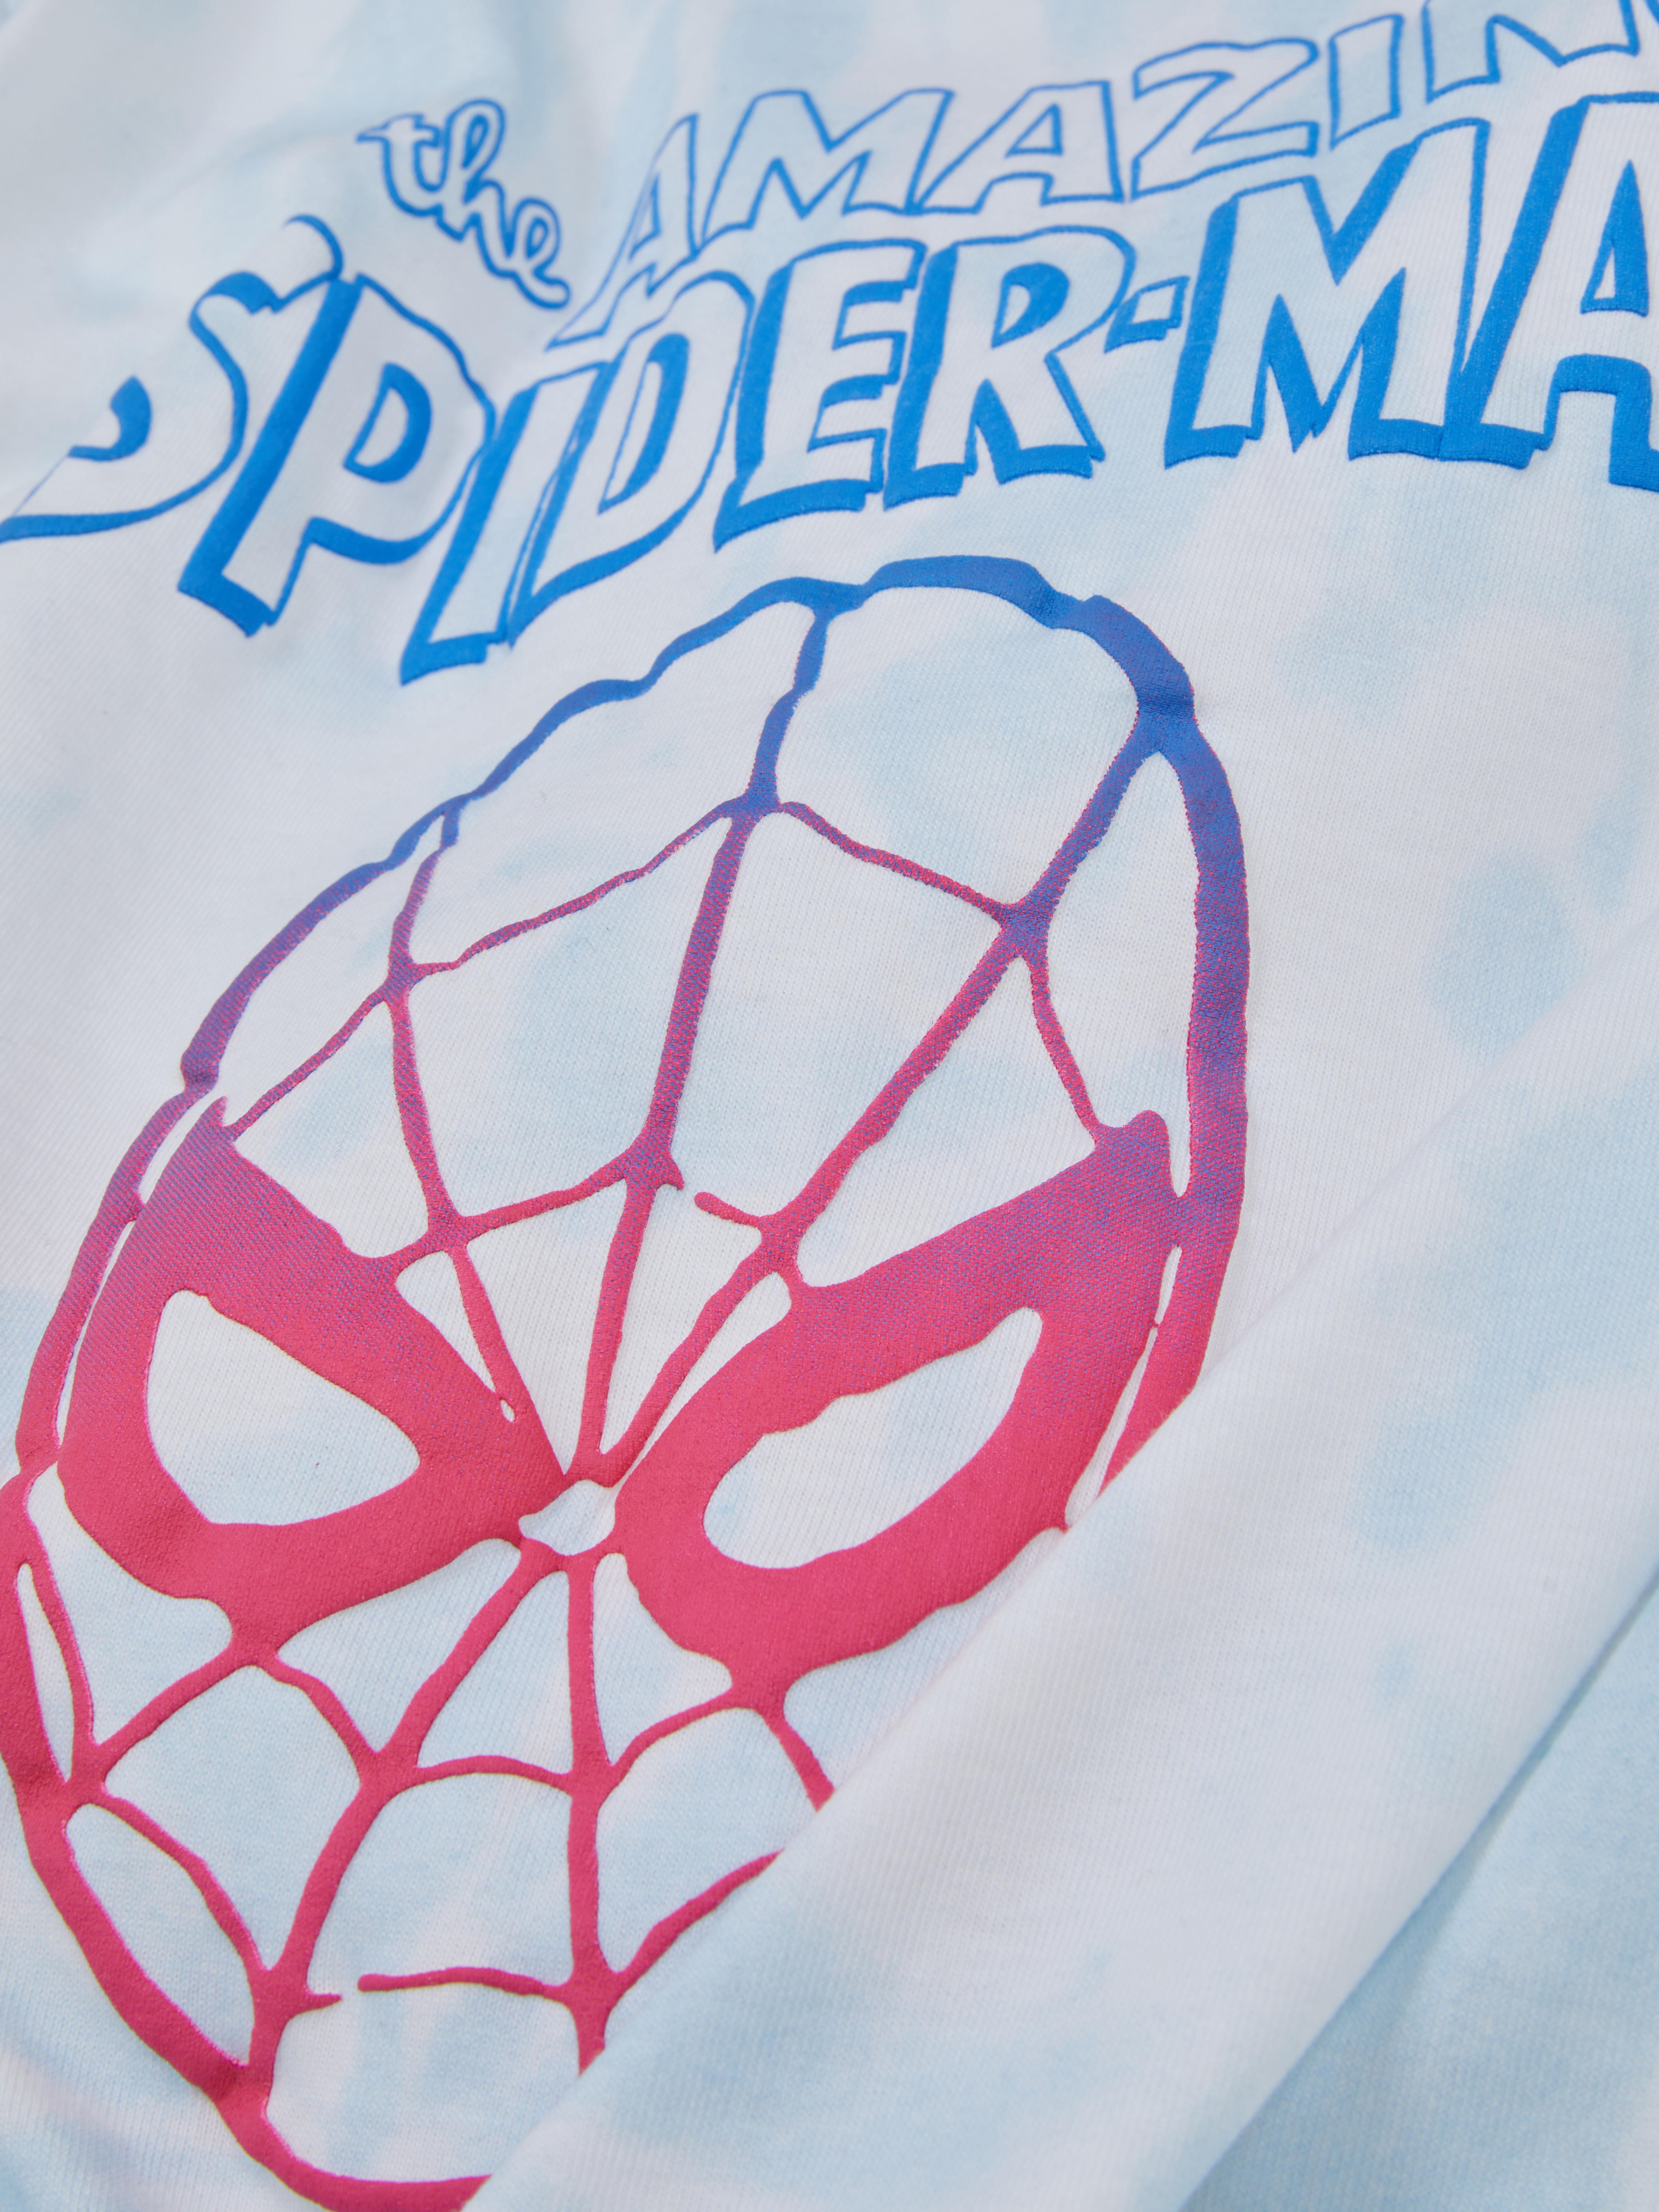 Spider-Man Tie-Dye T-shirt